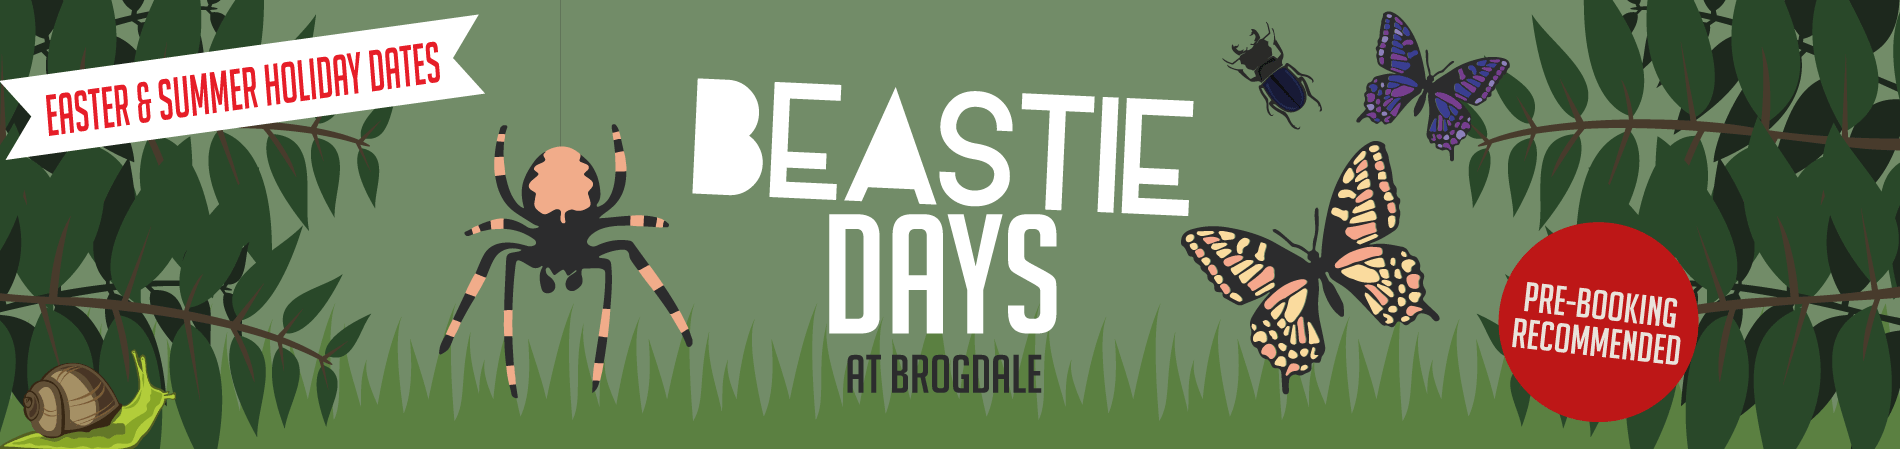 Brogdale Beastie Day